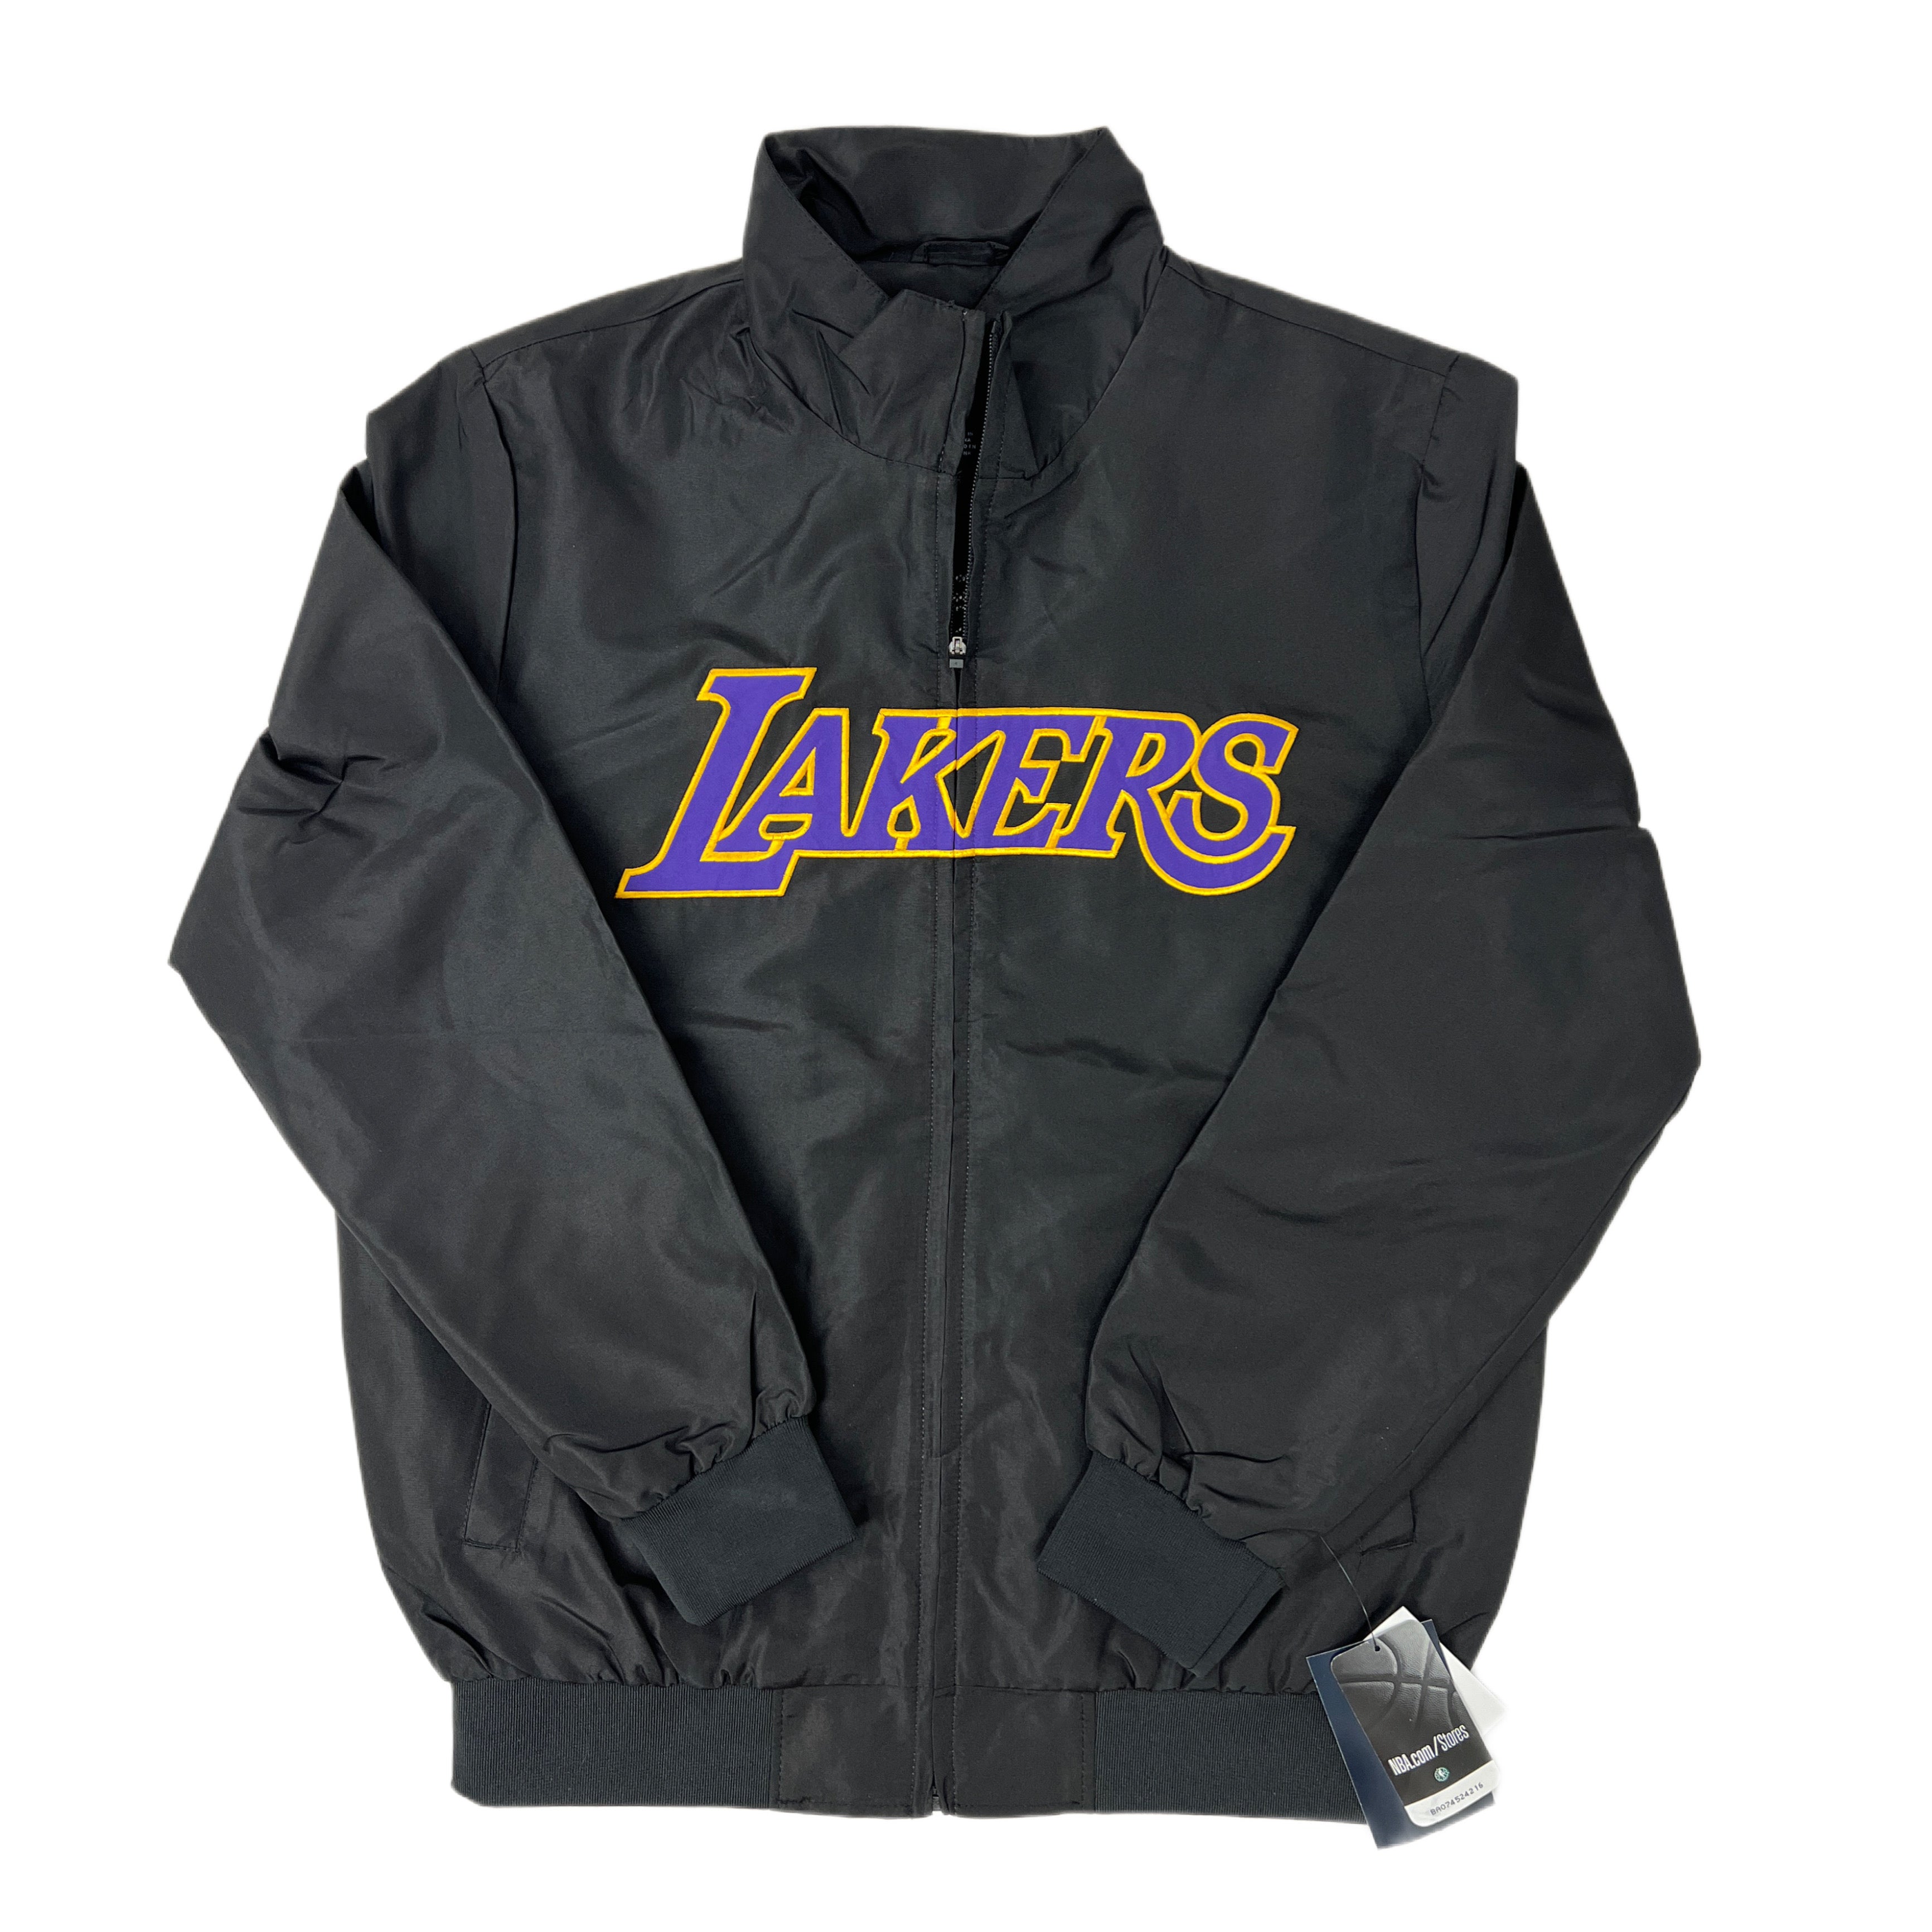 Navy MAN Comfort Fit NBA Los Angeles Lakers Licensed Long Sleeve